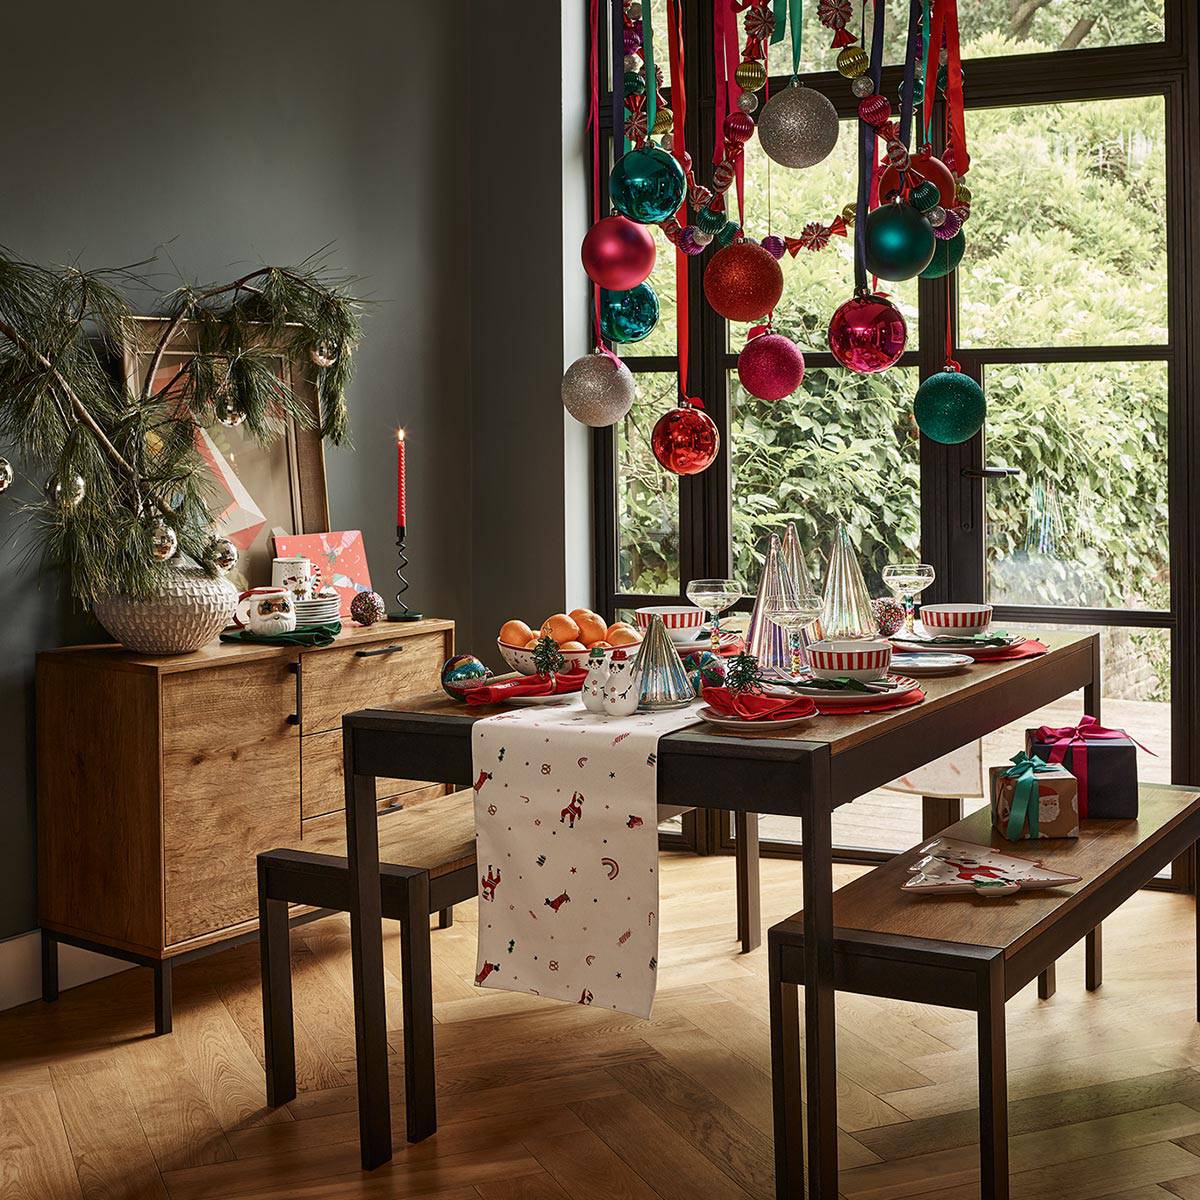 Vánočně prostřený stůl. Prohlédnout stolní dekorace